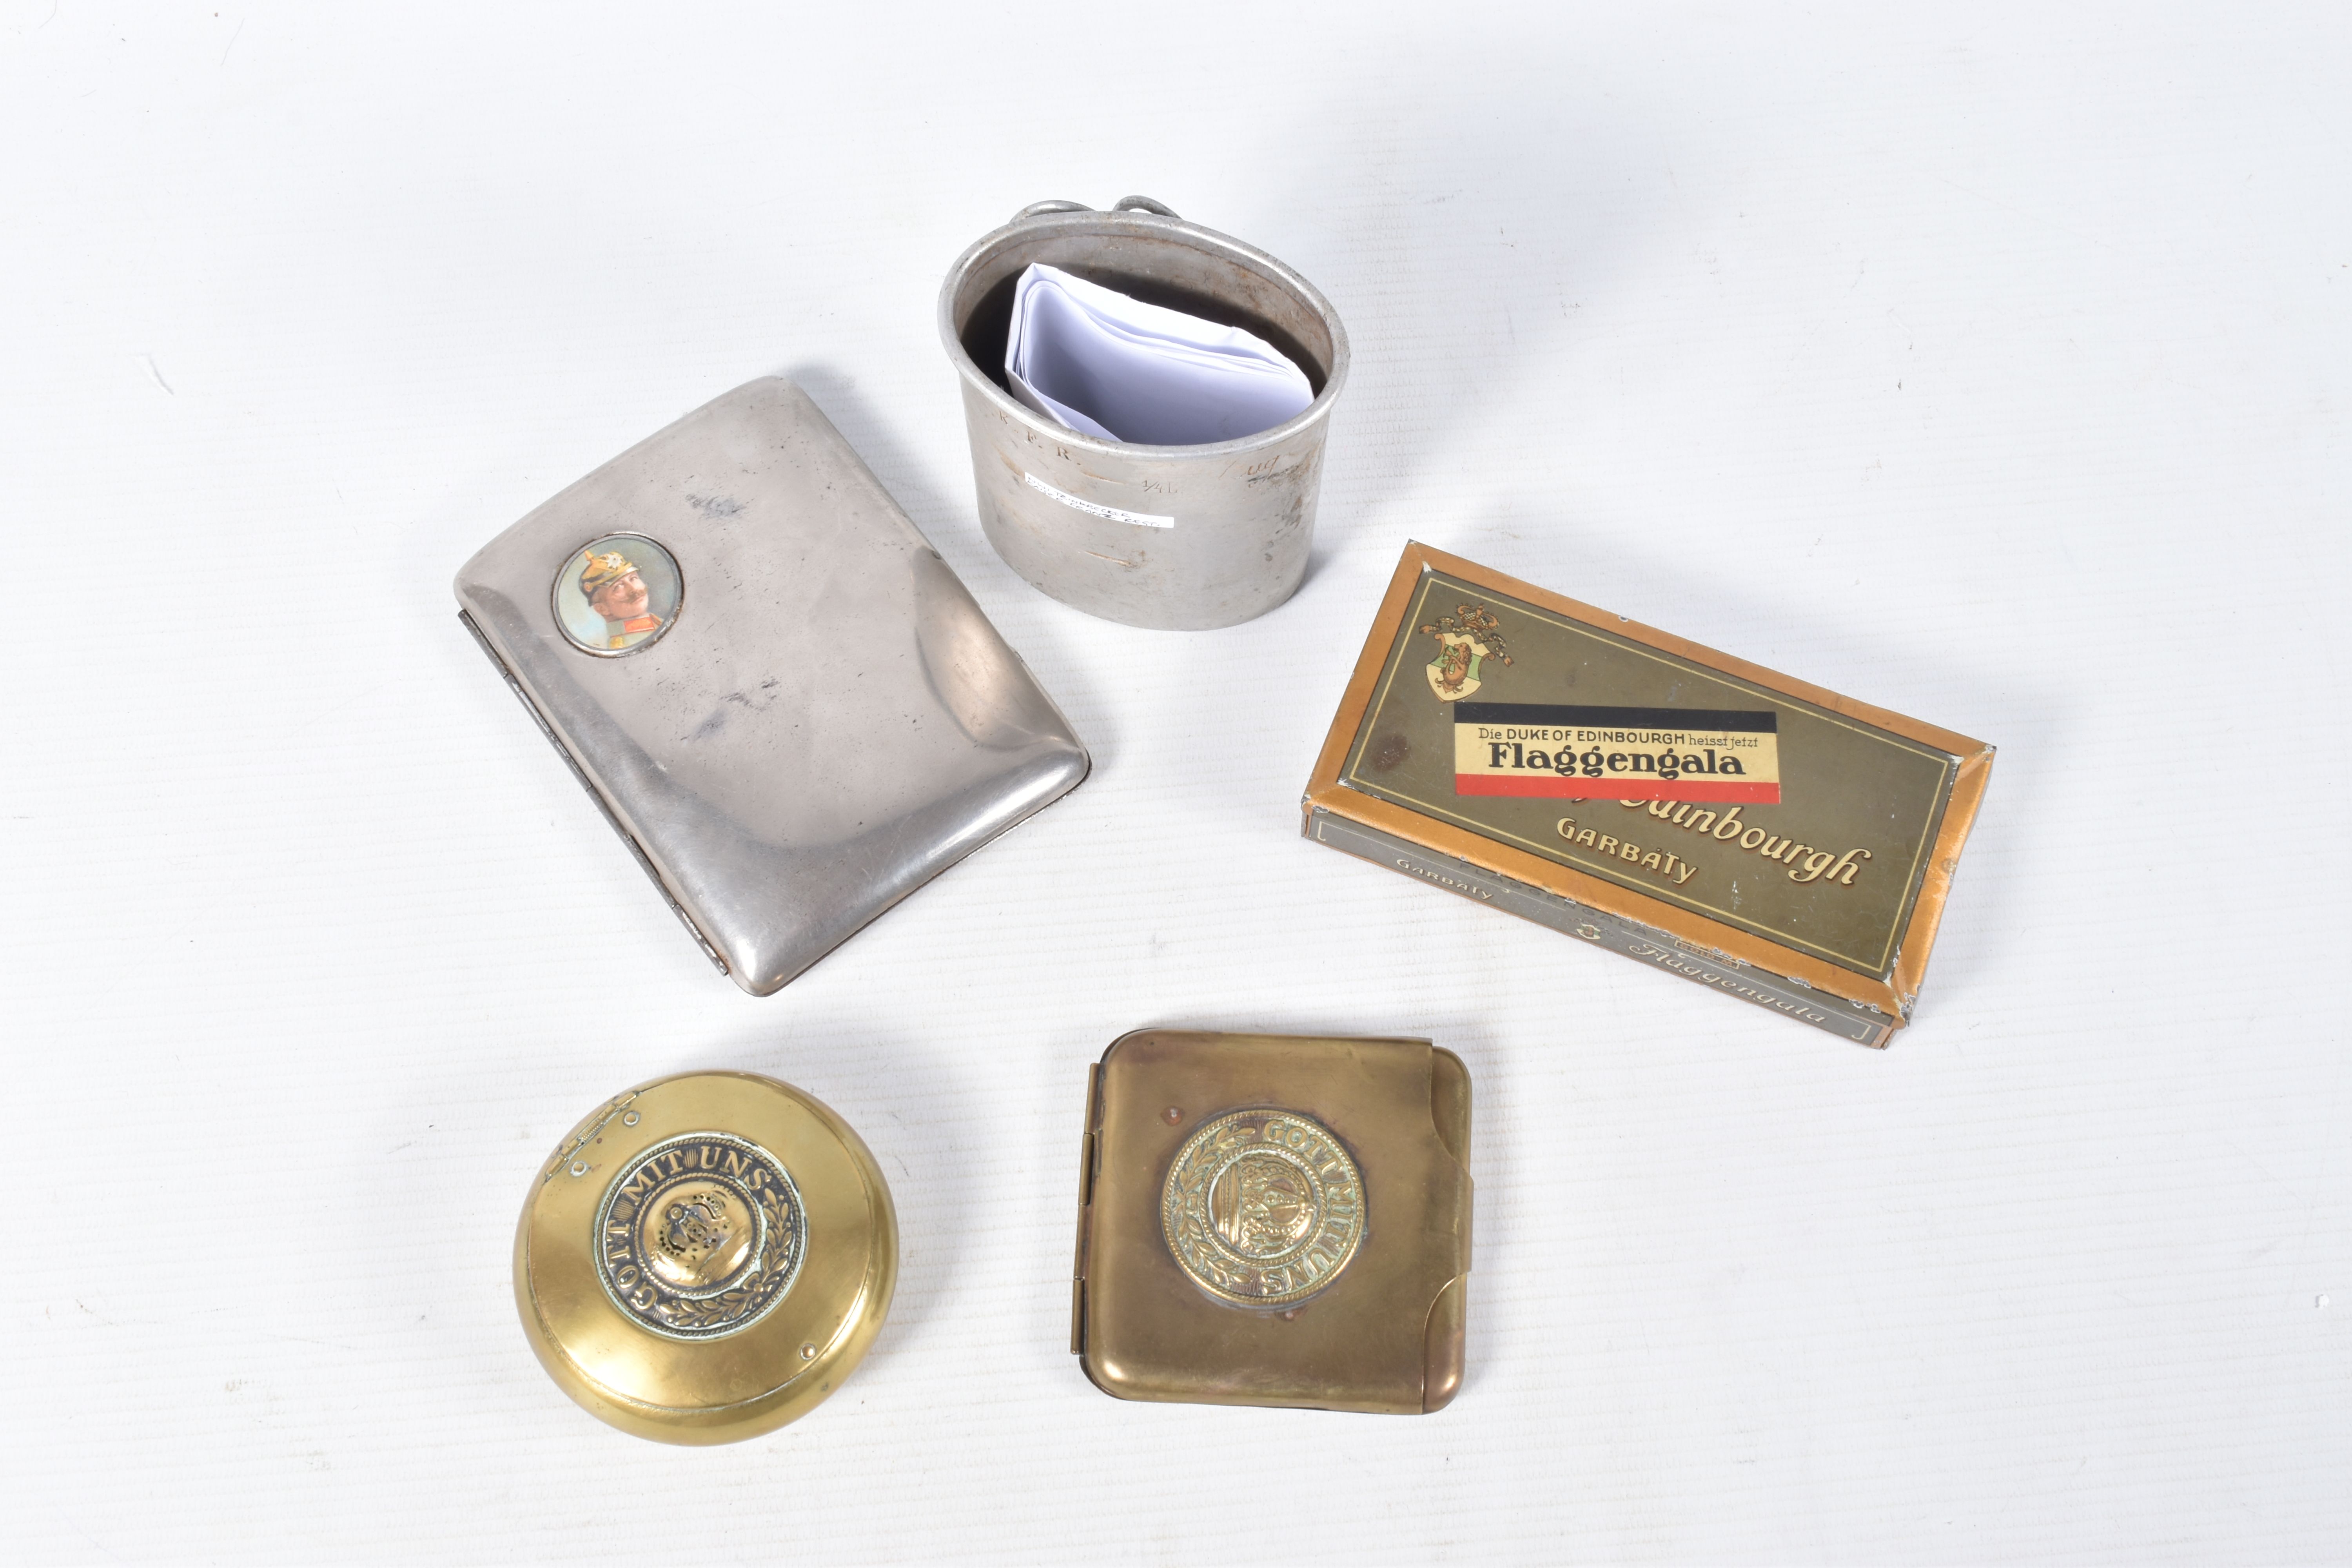 A SMALL COLLECTION OF GERMAN CIGARETTE CASES, TOBACCO BOX, ETC, comprising a brass cigarette case